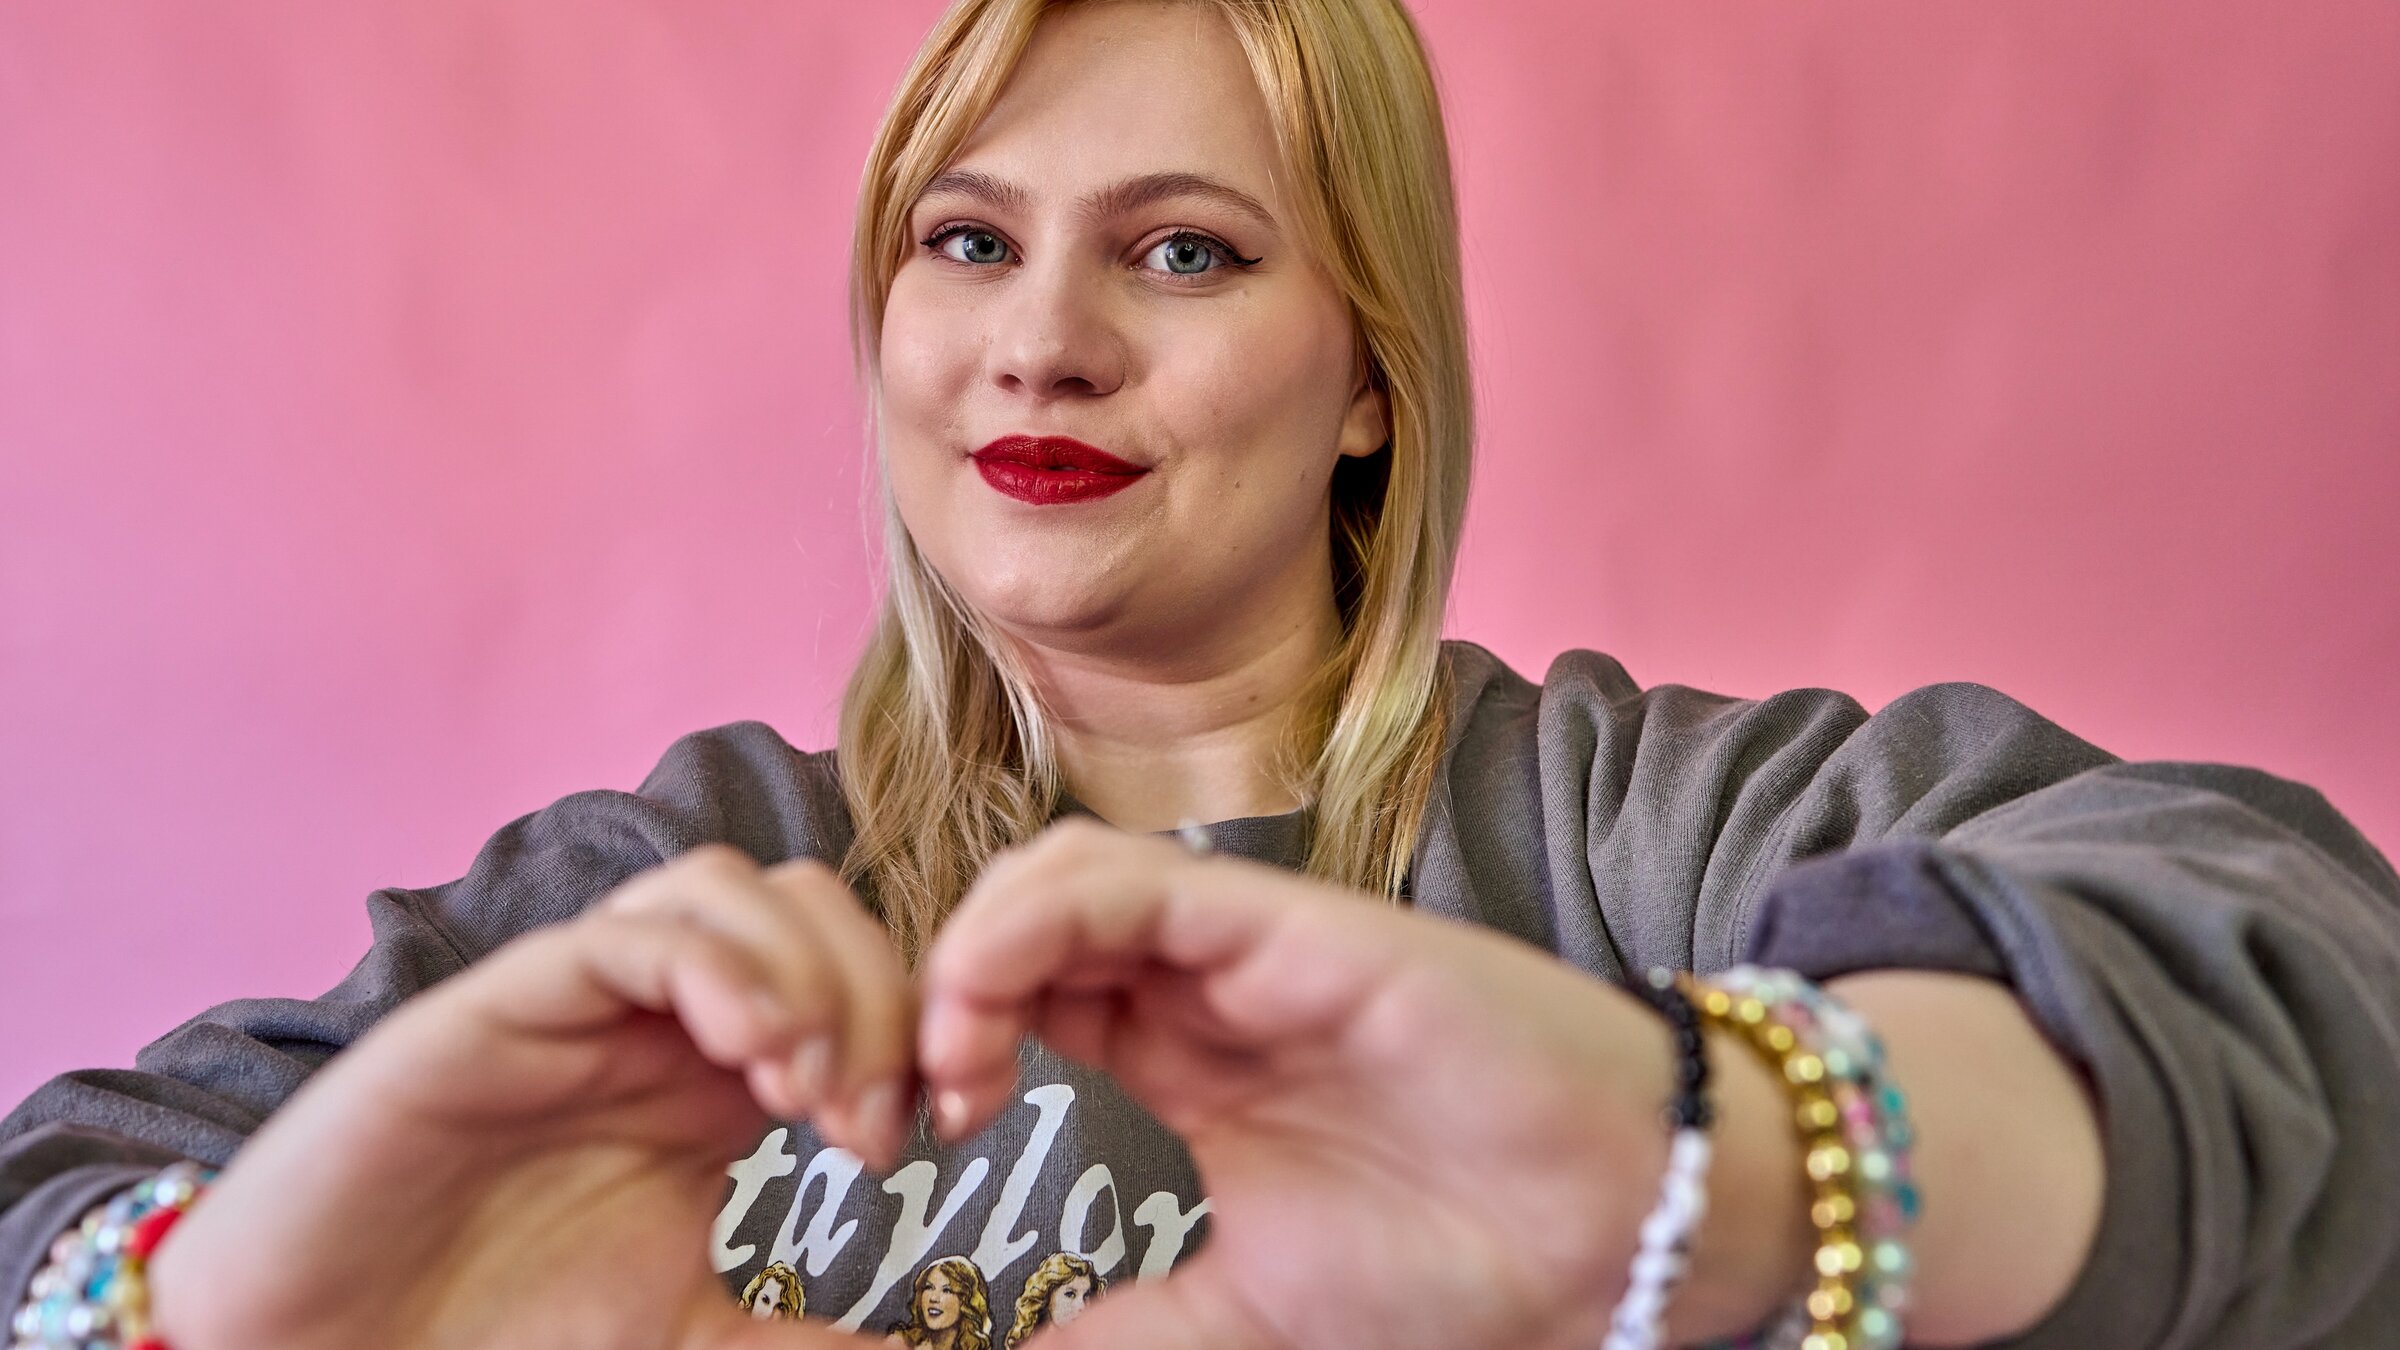 "37° - Being Swiftie. Kims Leben mit Taylor Swift": Kim Niehaus (26) steht vor einem rosa Hintergrund und trägt einen Swift-Pullover und Armbänder. Sie formt mit ihren Händen ein Herz, durch das "Taylor" zu lesen ist.